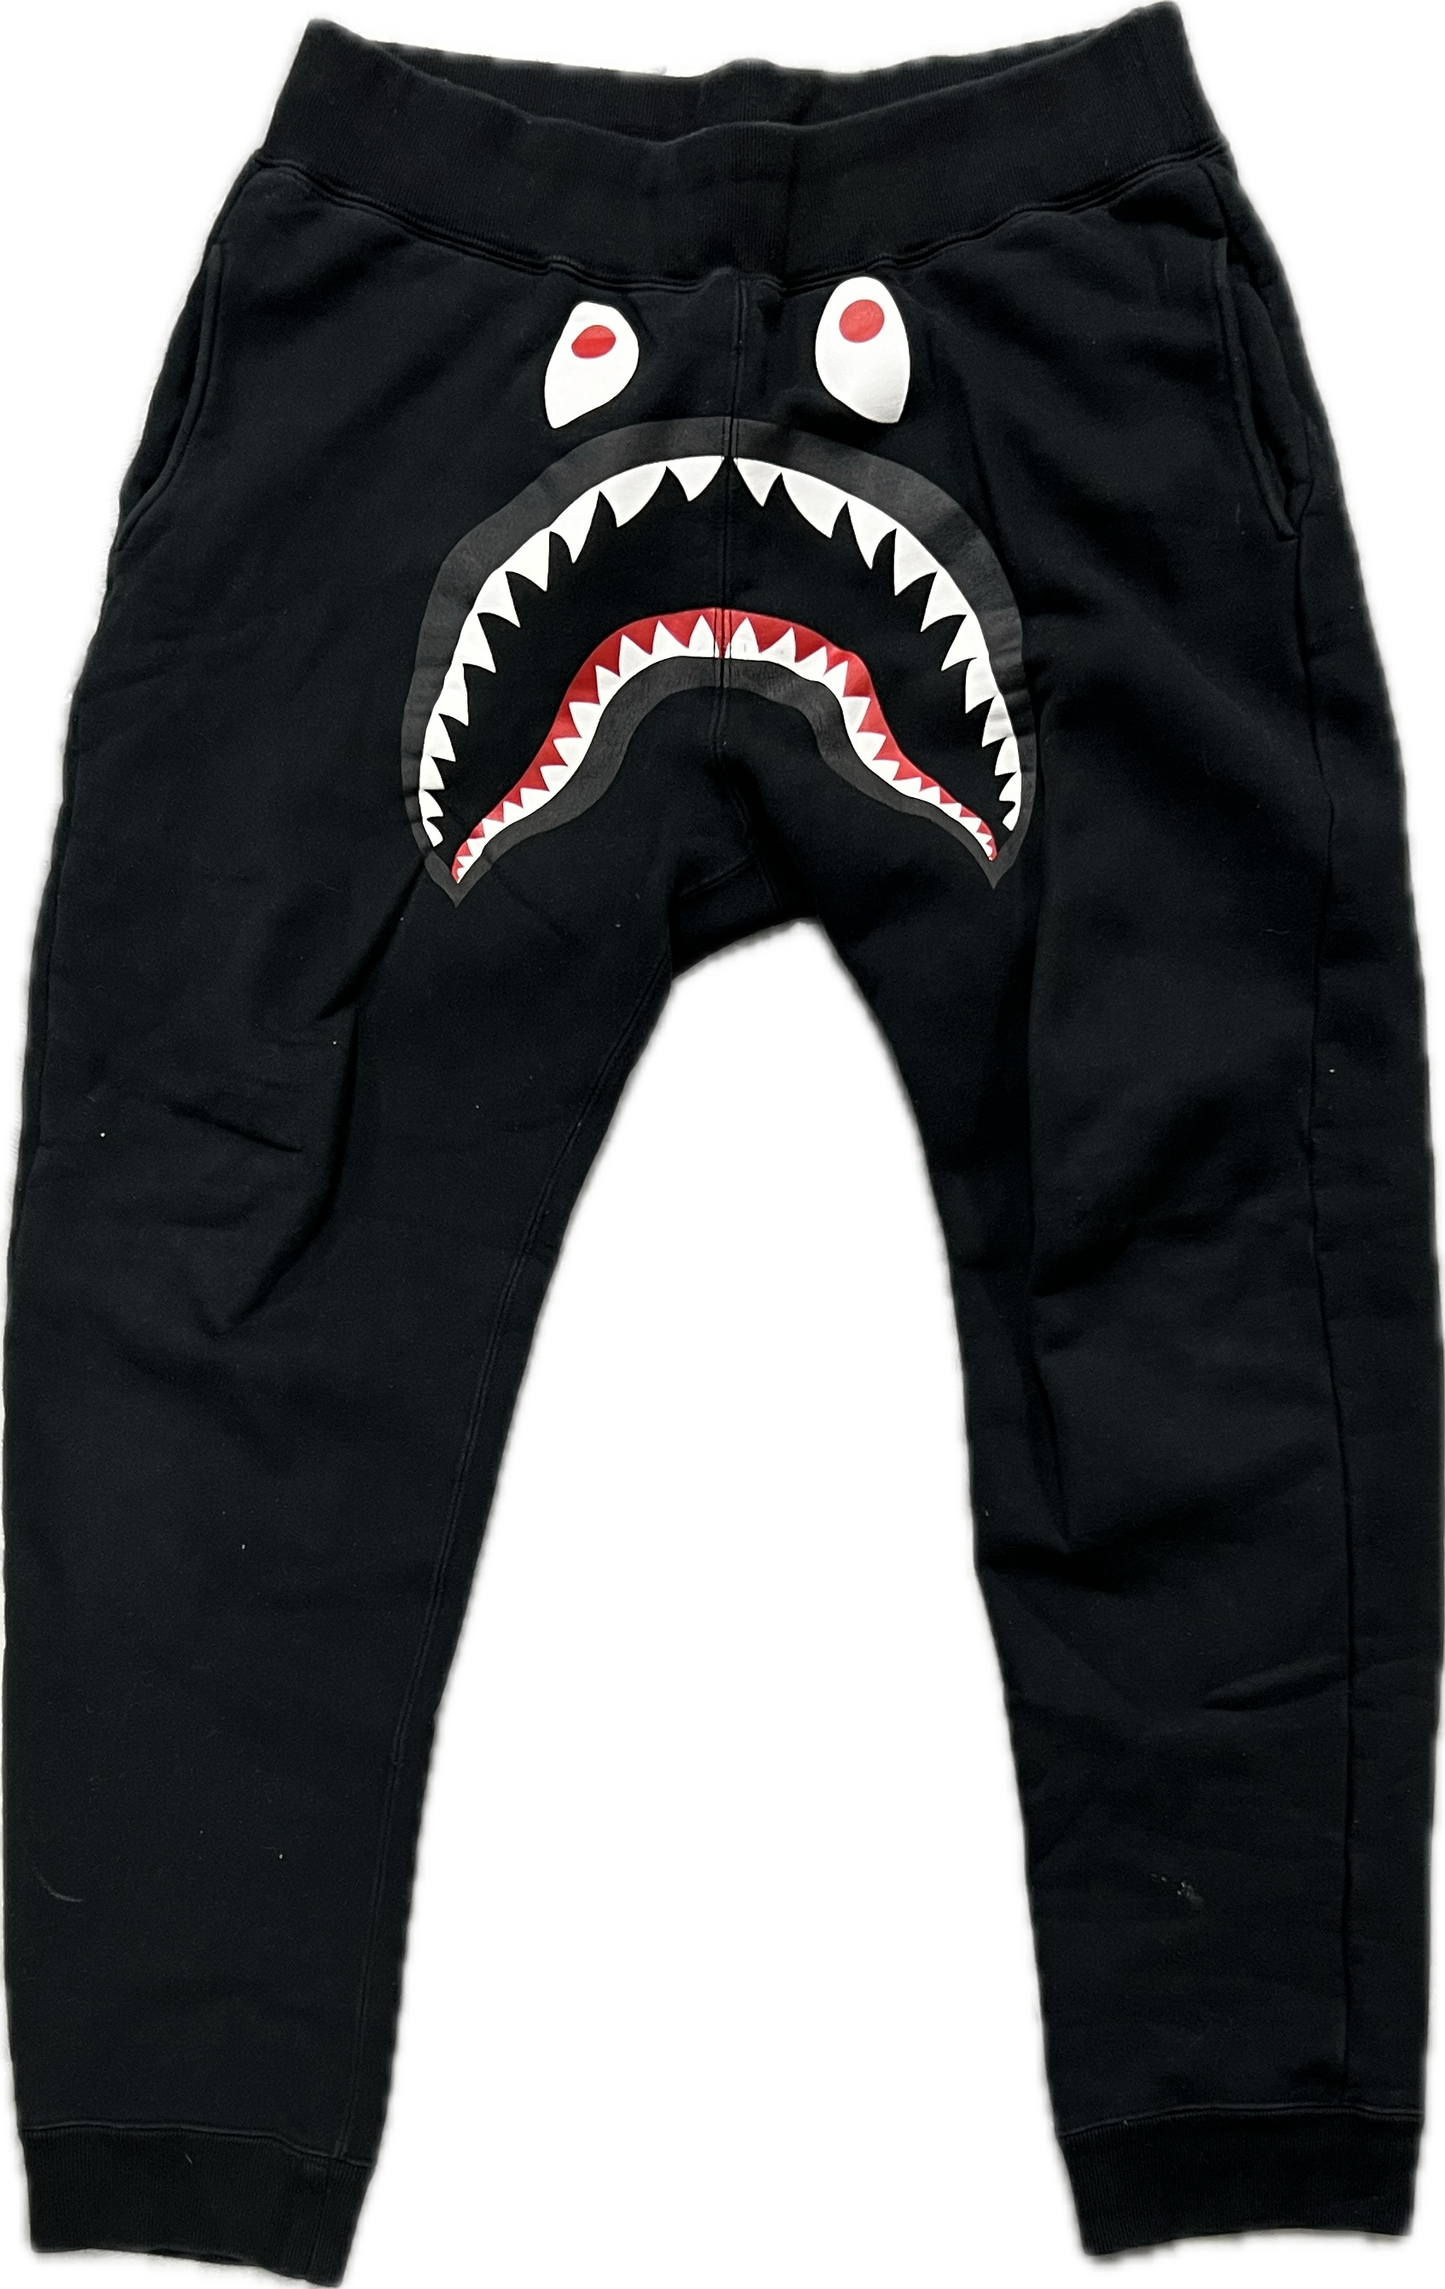 Bape Shark Face Sweatpants Black